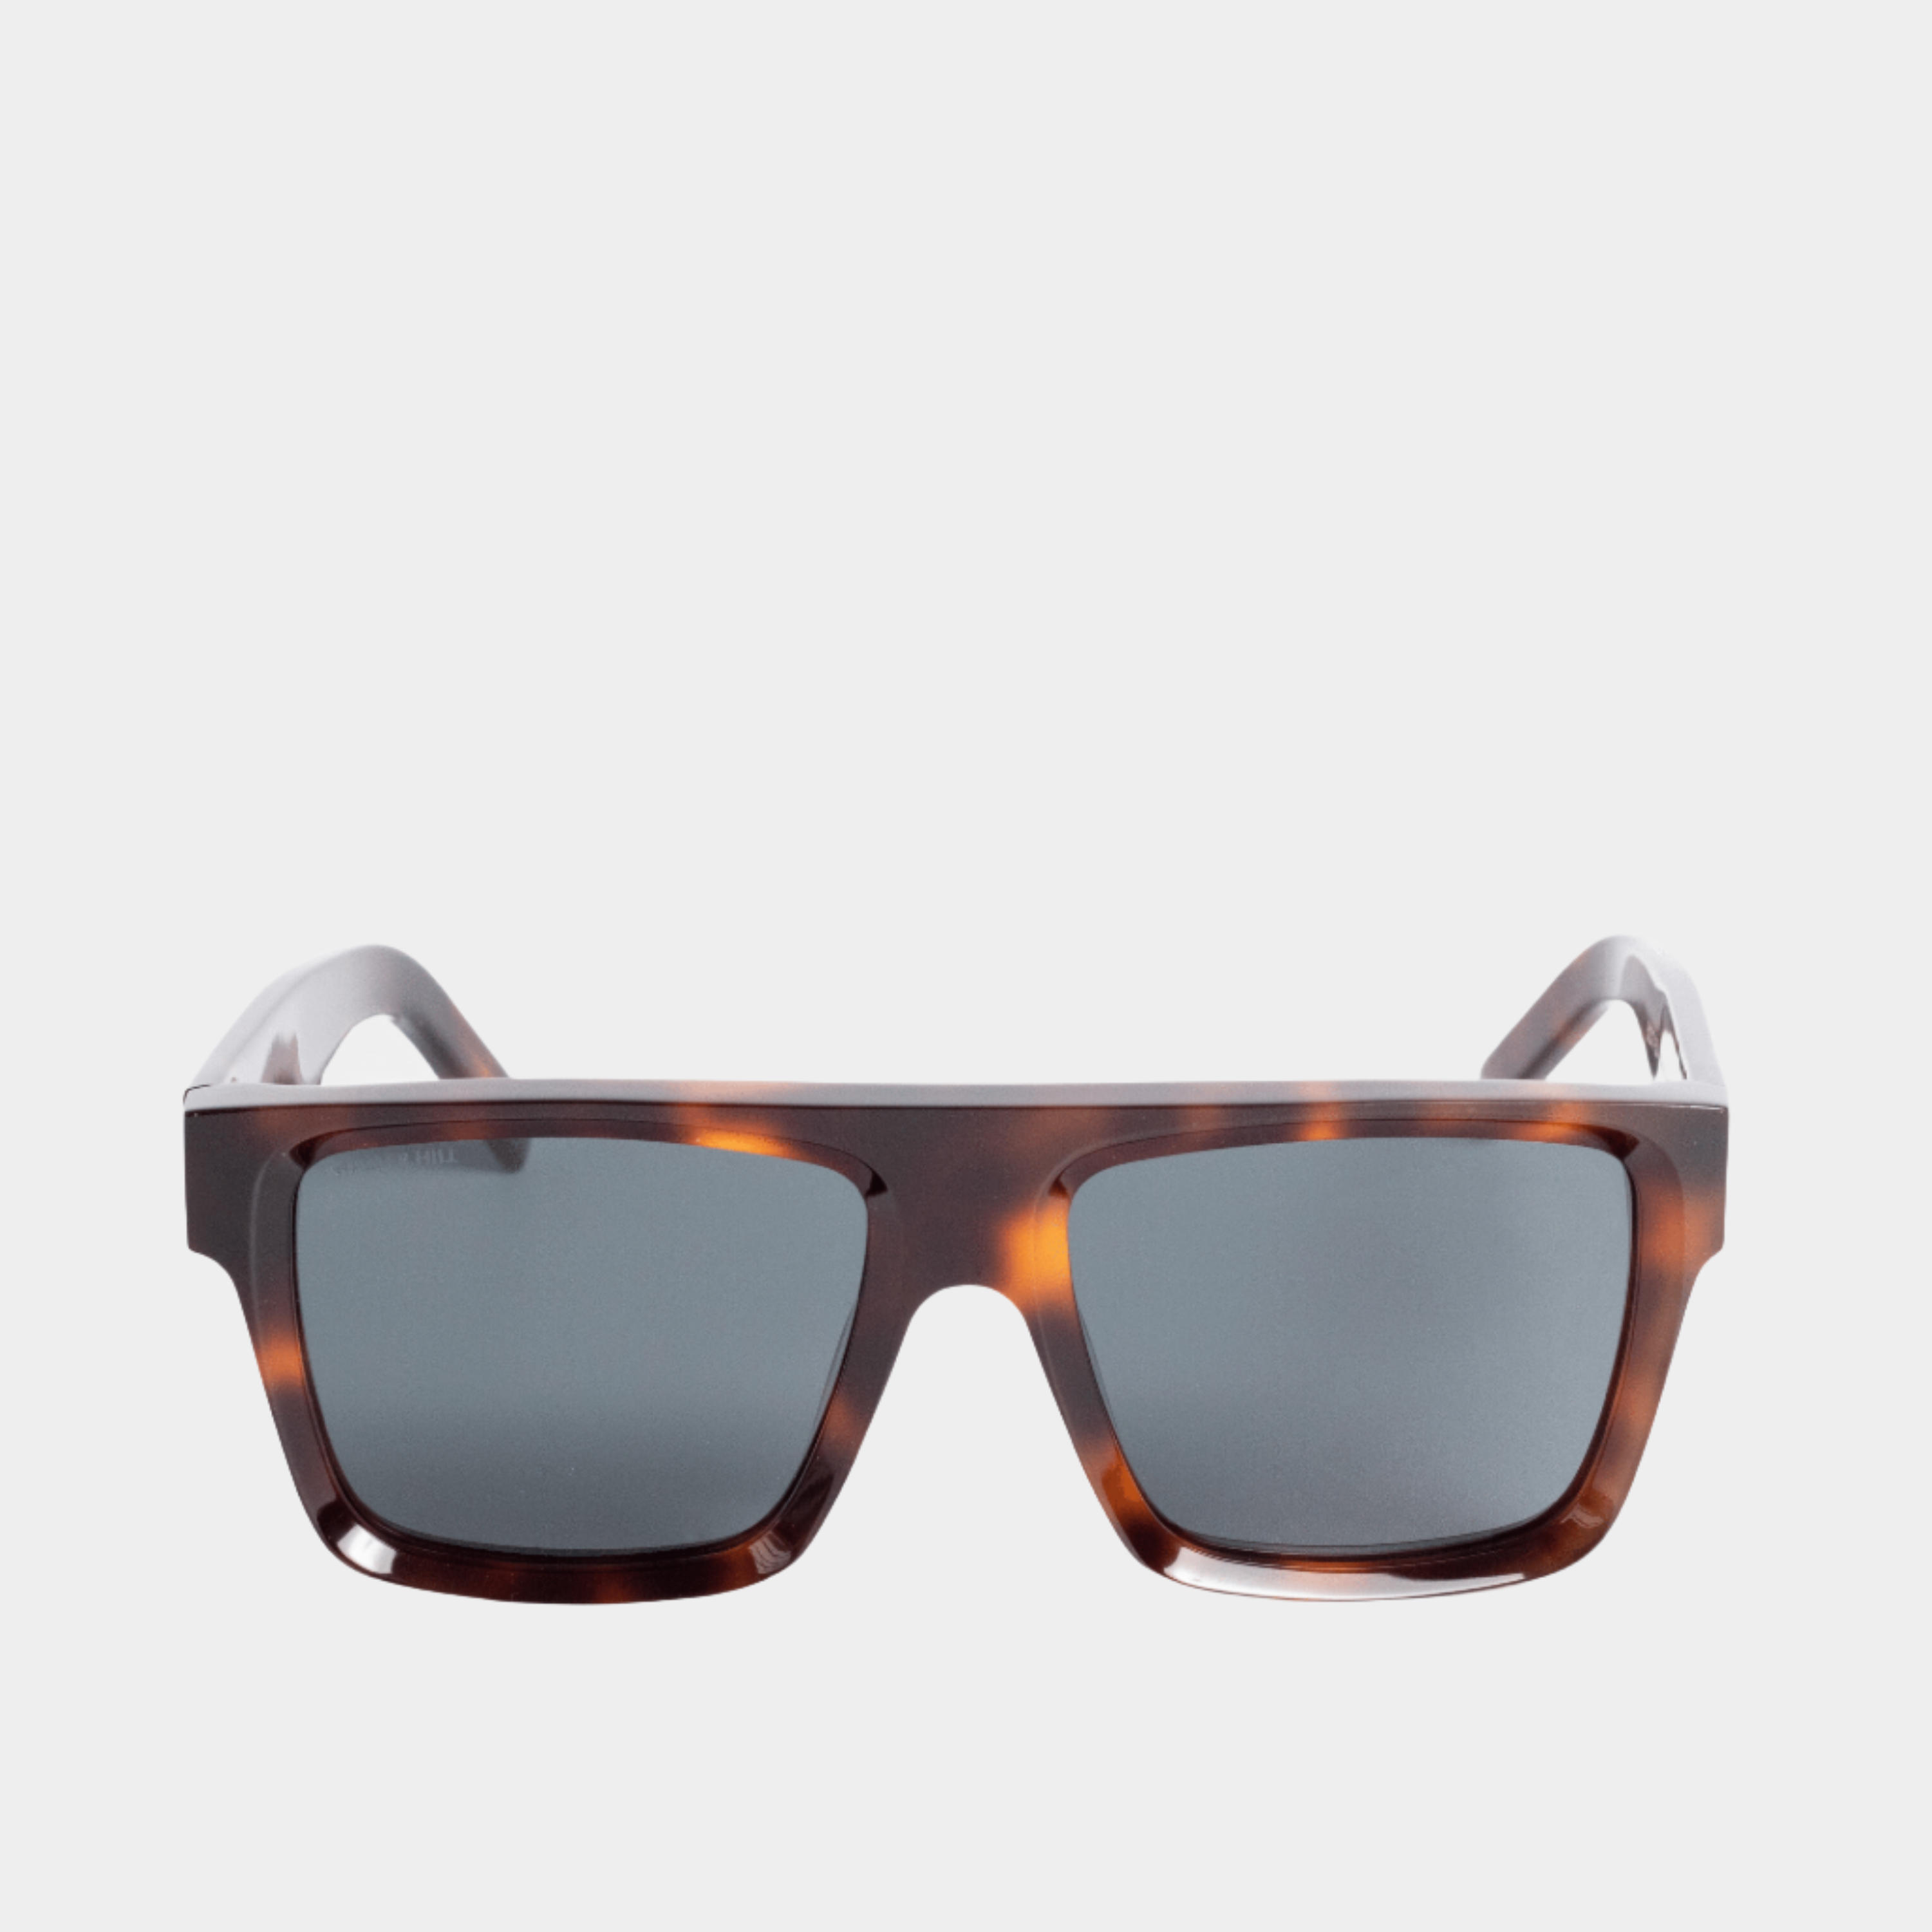 Walter Hill Sunglasses Oversized / Tortoise / Polarized Cat.3 BANKS - Tortoise